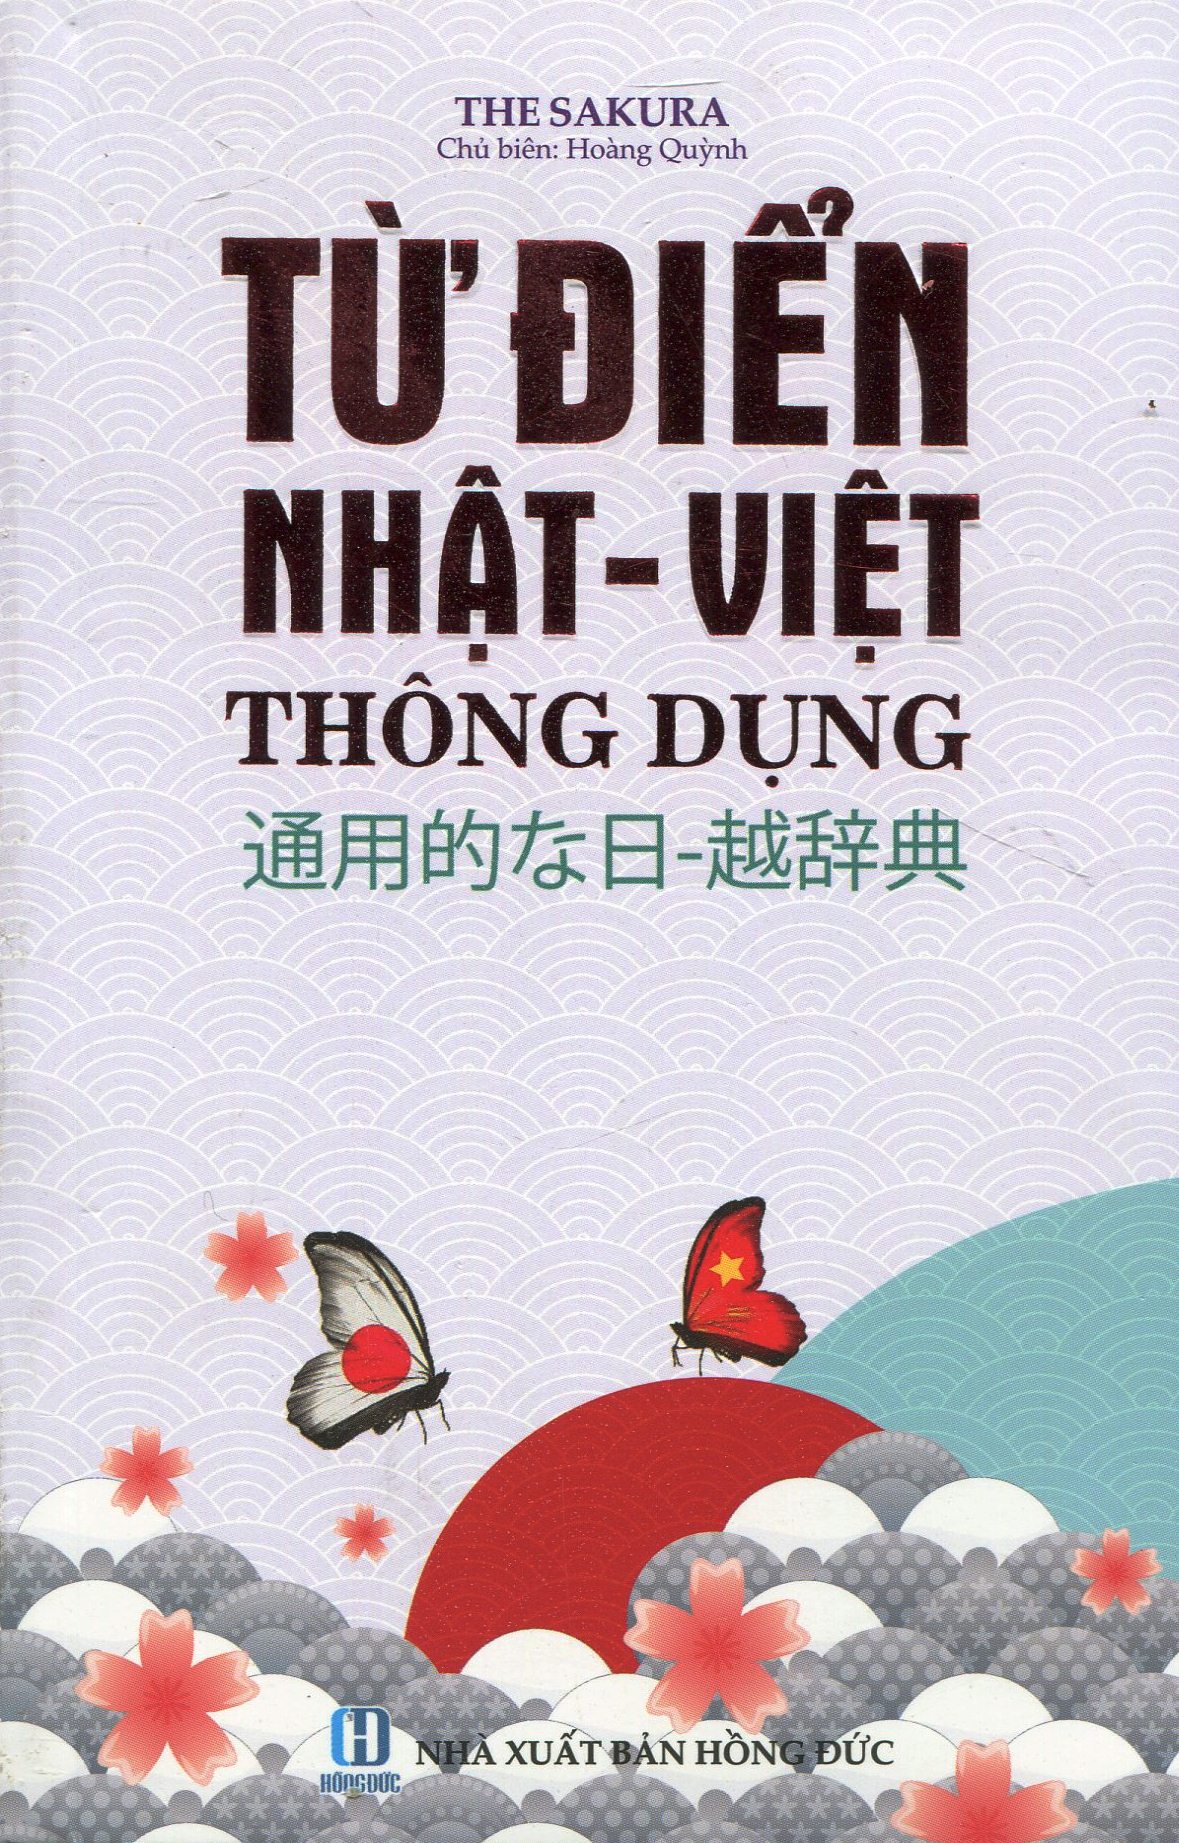 Từ Điển Nhật - Việt Thông Dụng PDF